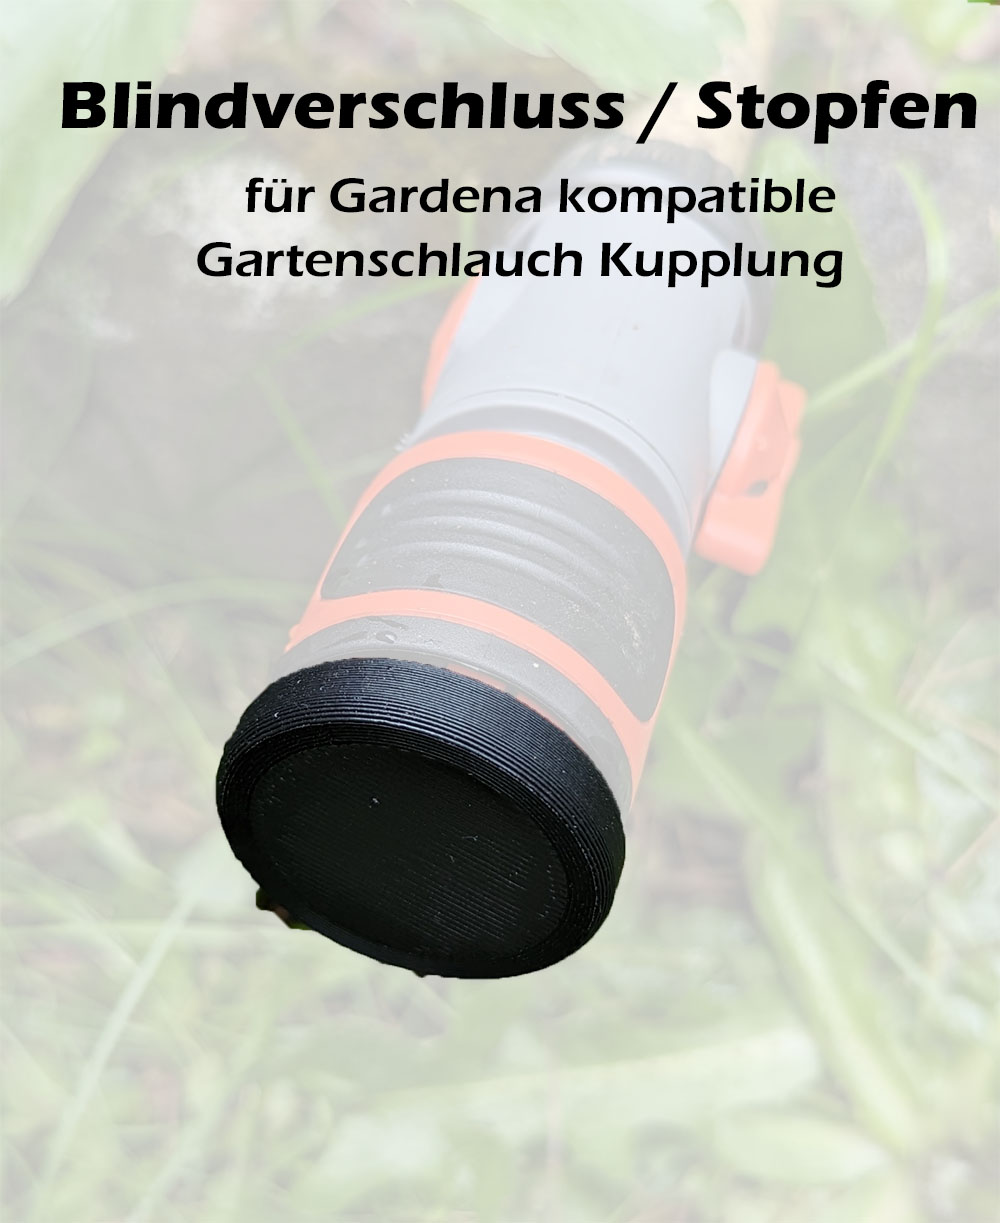 https://www.printed4me.de/wp-content/uploads/2023/05/Gardena-kompatible-Schlauchkupplung-Kupplung-Gartenschlauch-Schnellkupplung-Blind-Verschluss-Stopfen-Titelbild.jpg